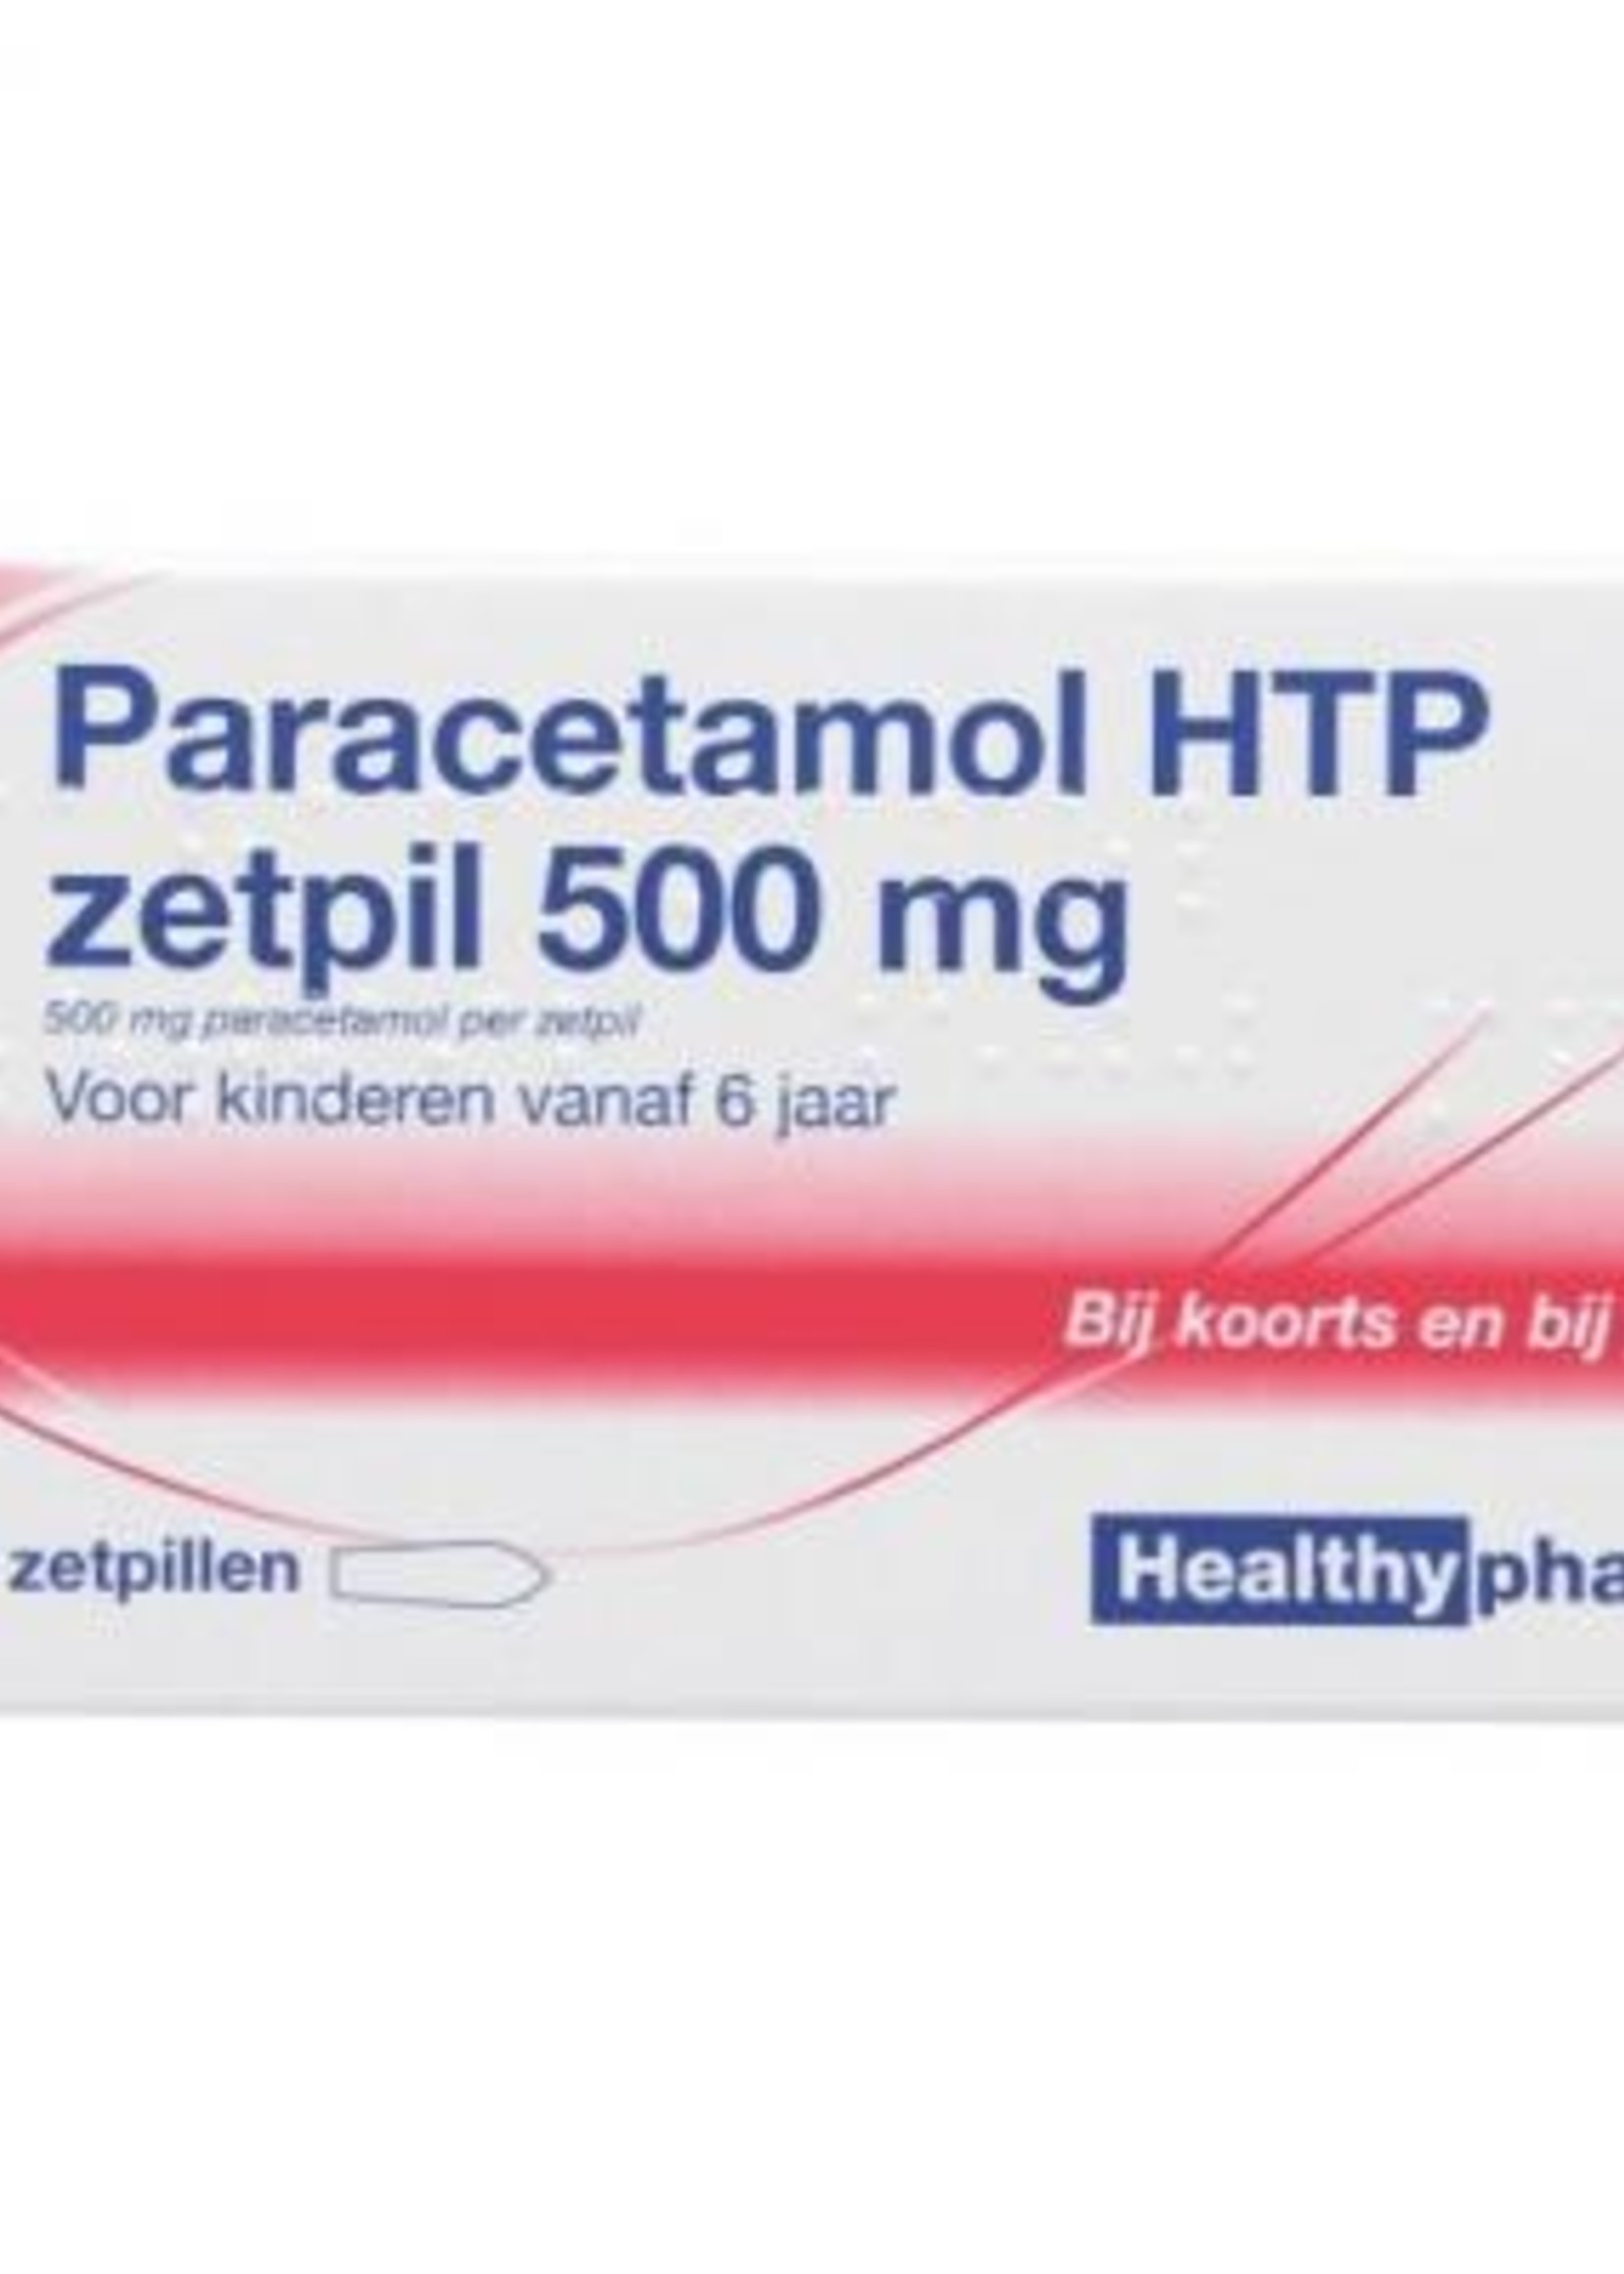 Healthypharm Paracetamol HTP zetpil 500 mg, 10 zetpillen